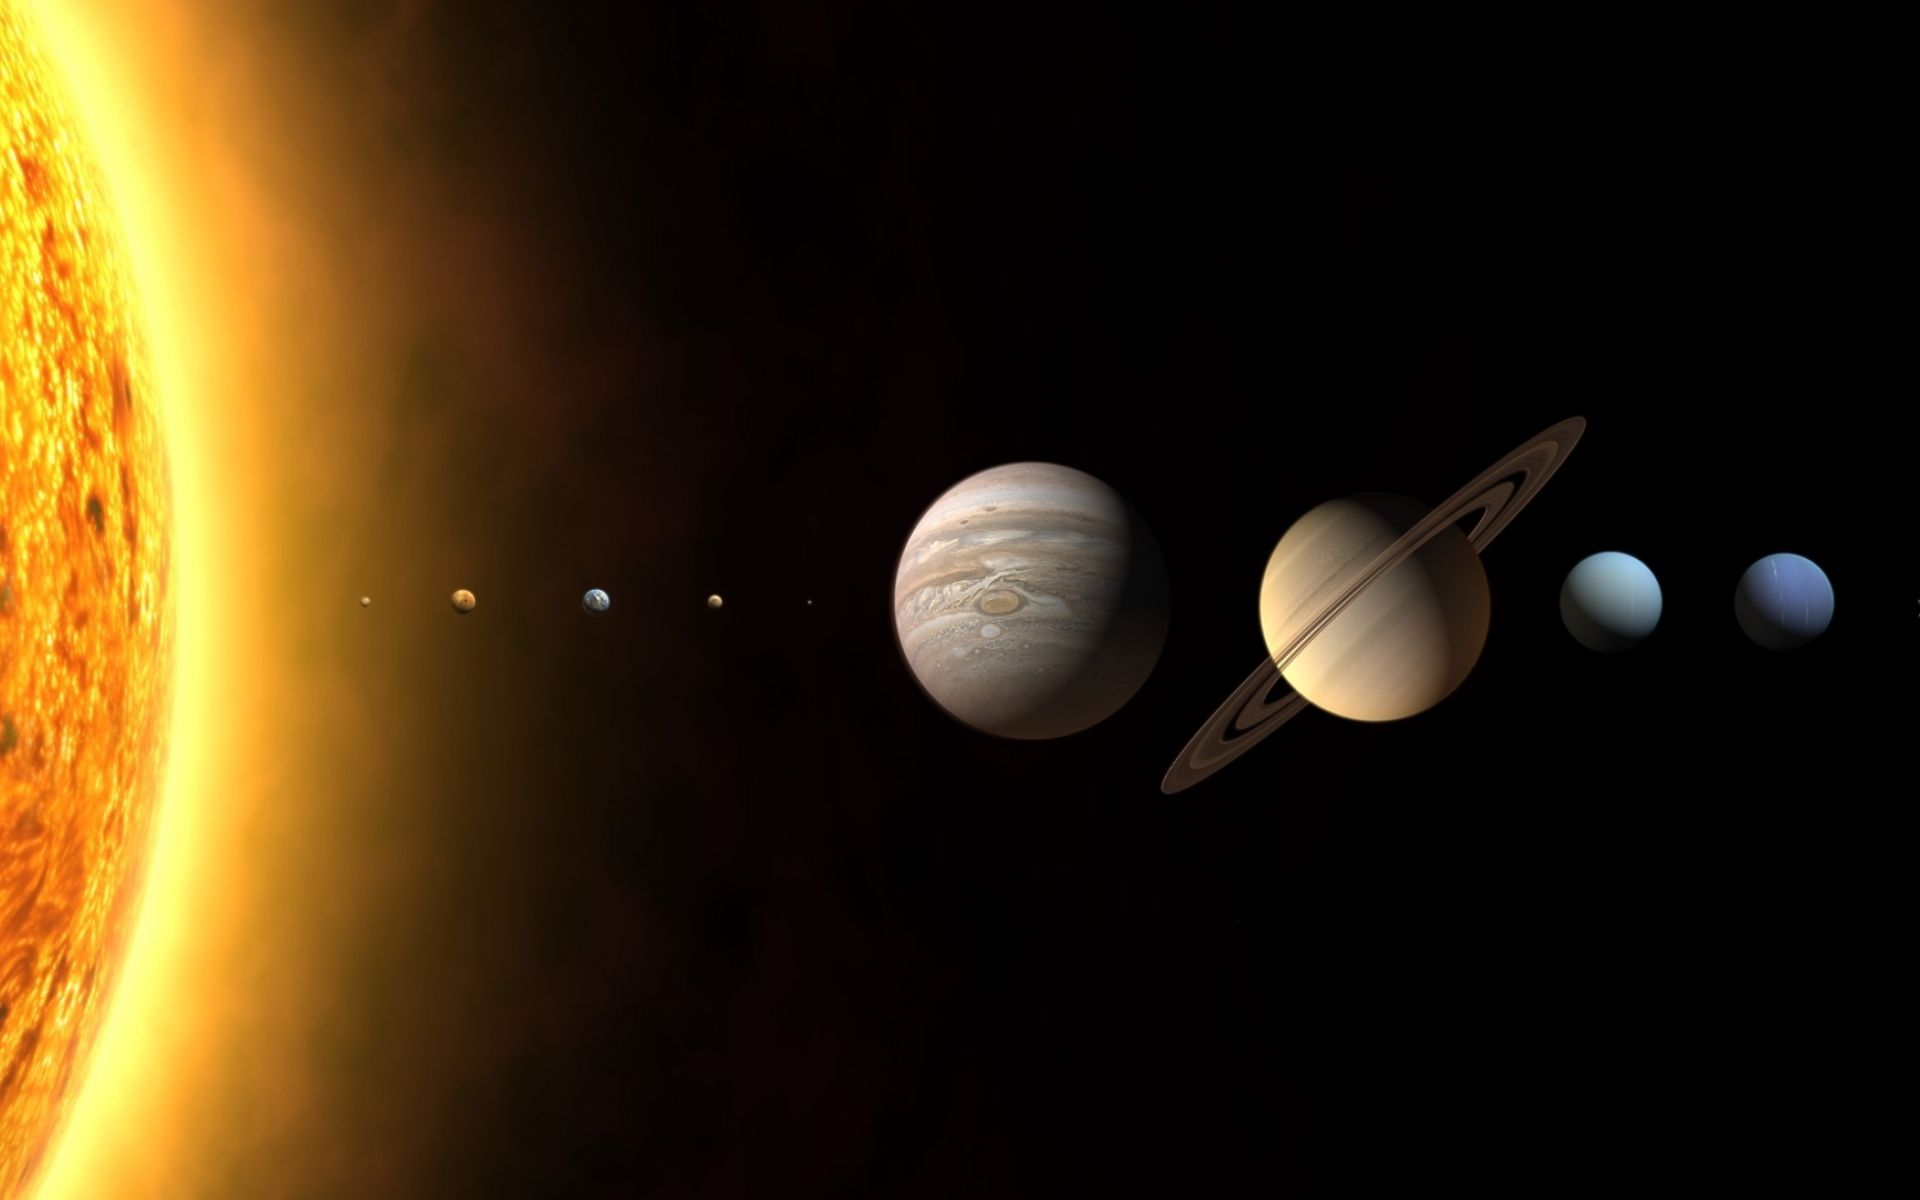 размеры планет солнечной системы картинки